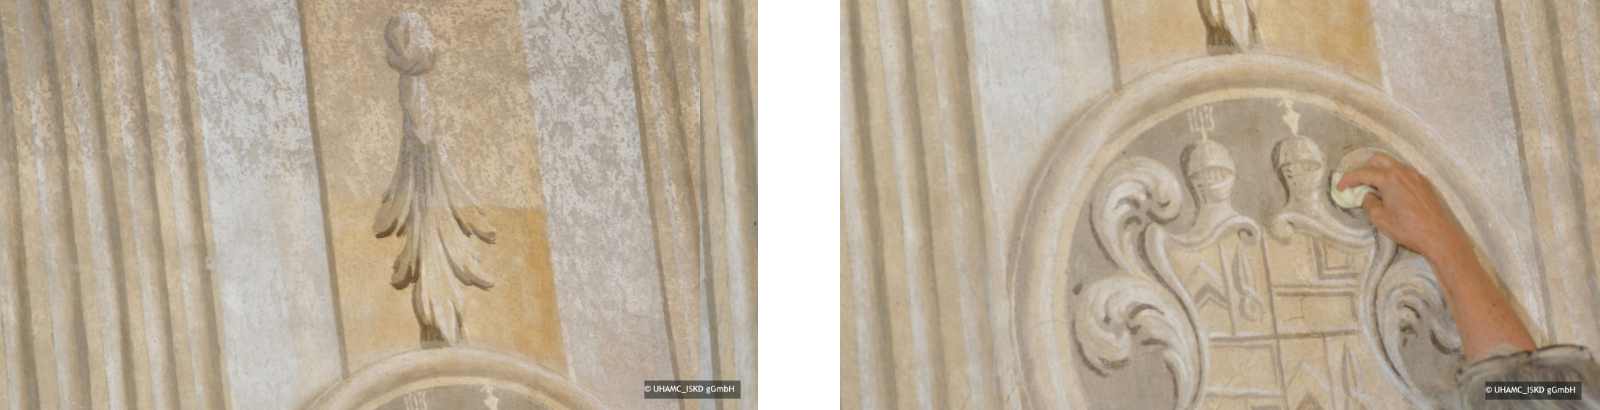 Zwei Nahaufnahmen der Darstellung der Wandmalerei im Vorzustand und mit einem Musterfeld zur Behandlung der biogenen Besiedlung. Im Vergleichbild wird eine deutliche optische Beruhigung der Wandmalereioberflächen in Schloßkapelle gezeigt.